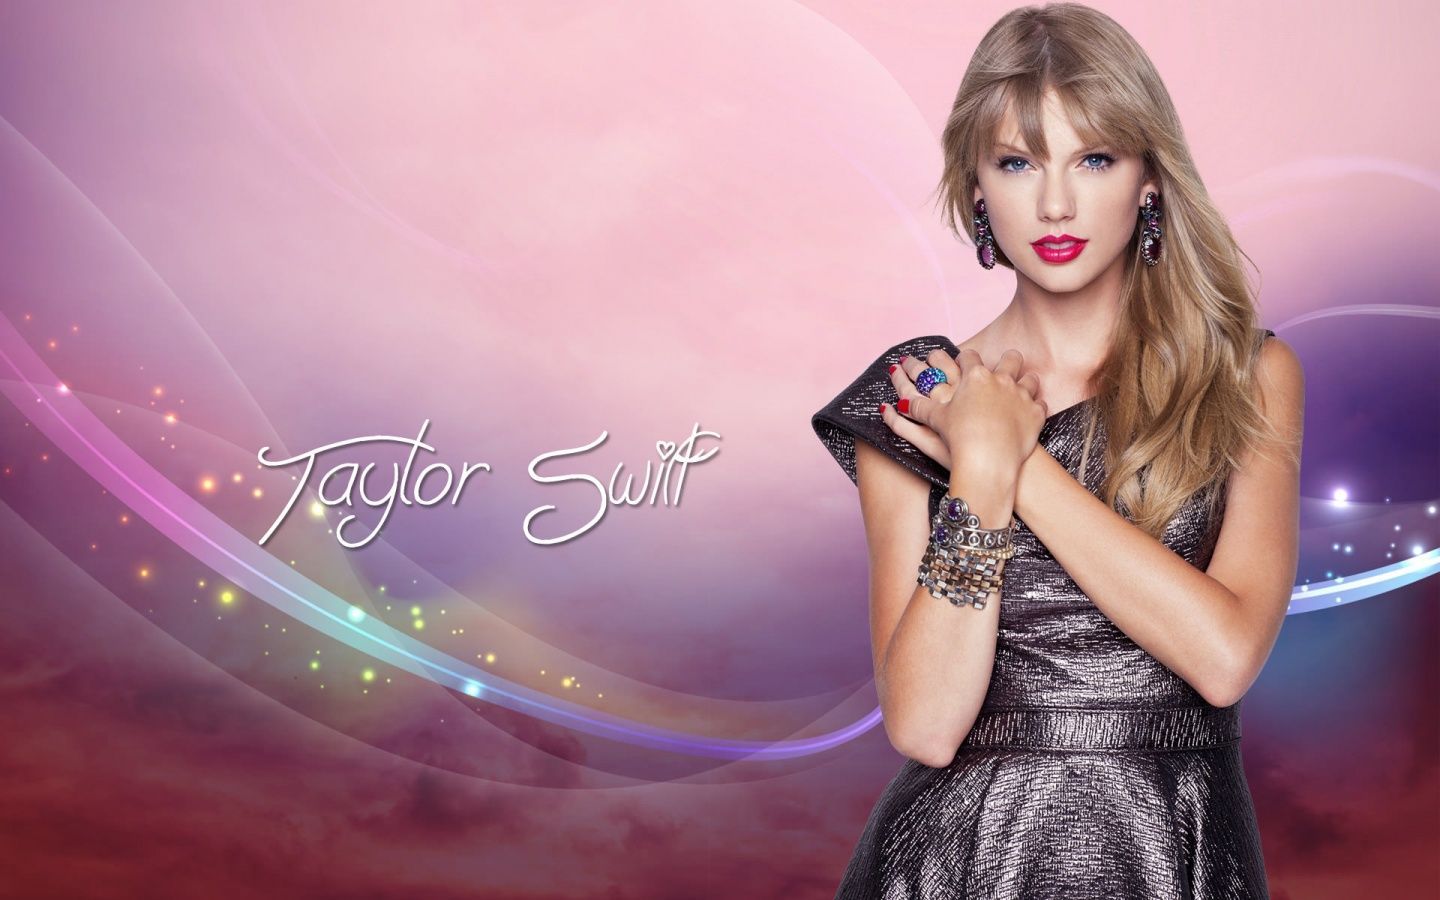 Taylor swift - BeSwifties Wallpaper 35092969 - Fanpop